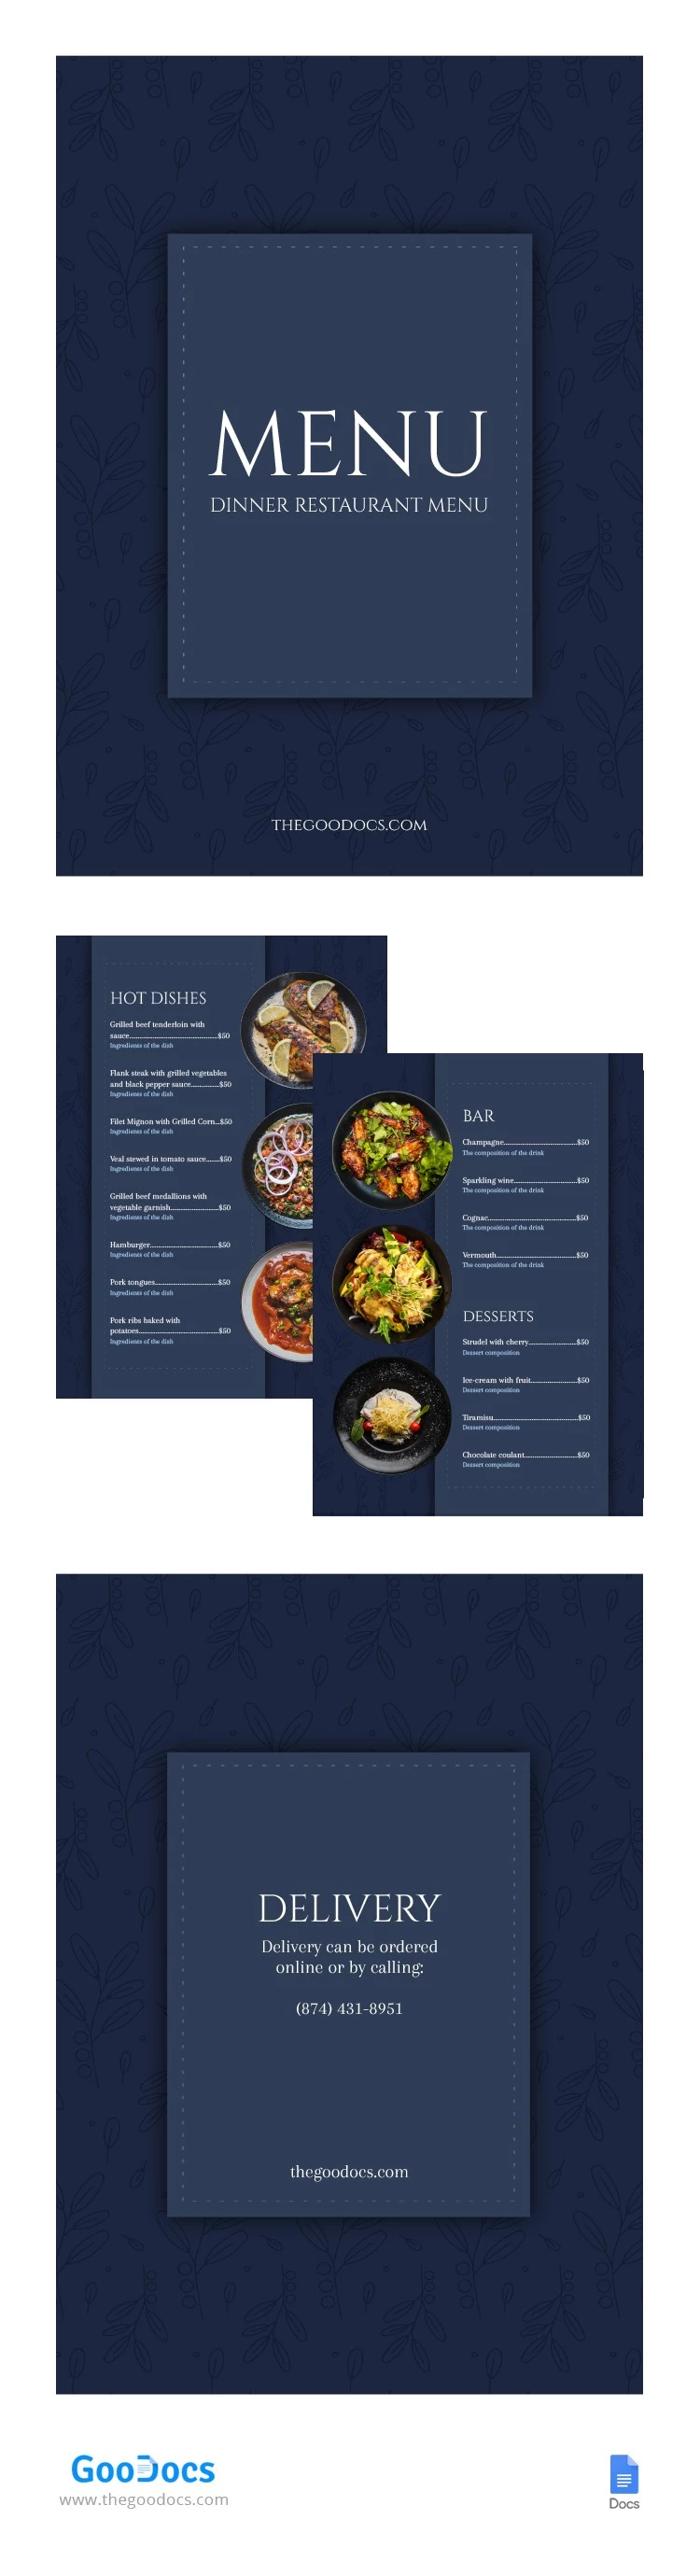 Ementa de Restaurante para Jantar Elegante - free Google Docs Template - 10065111